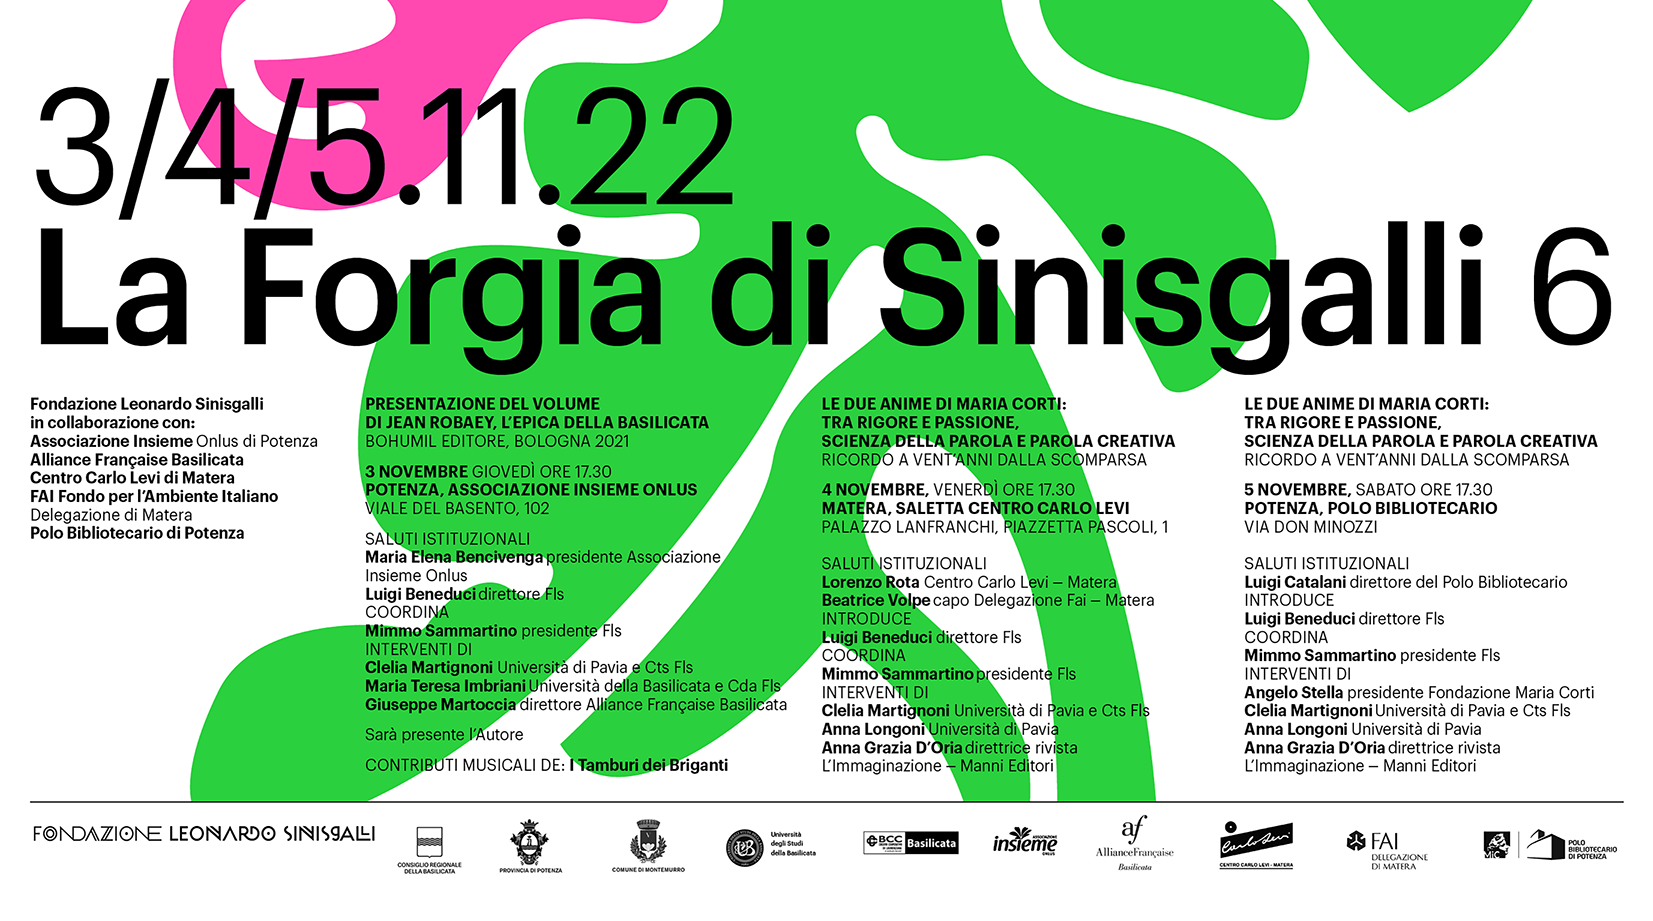 Fondazione Leonardo Sinisgalli, al via i cartelloni “Furor Sinisgalli 11” e “La Forgia di Sinisgalli 6”